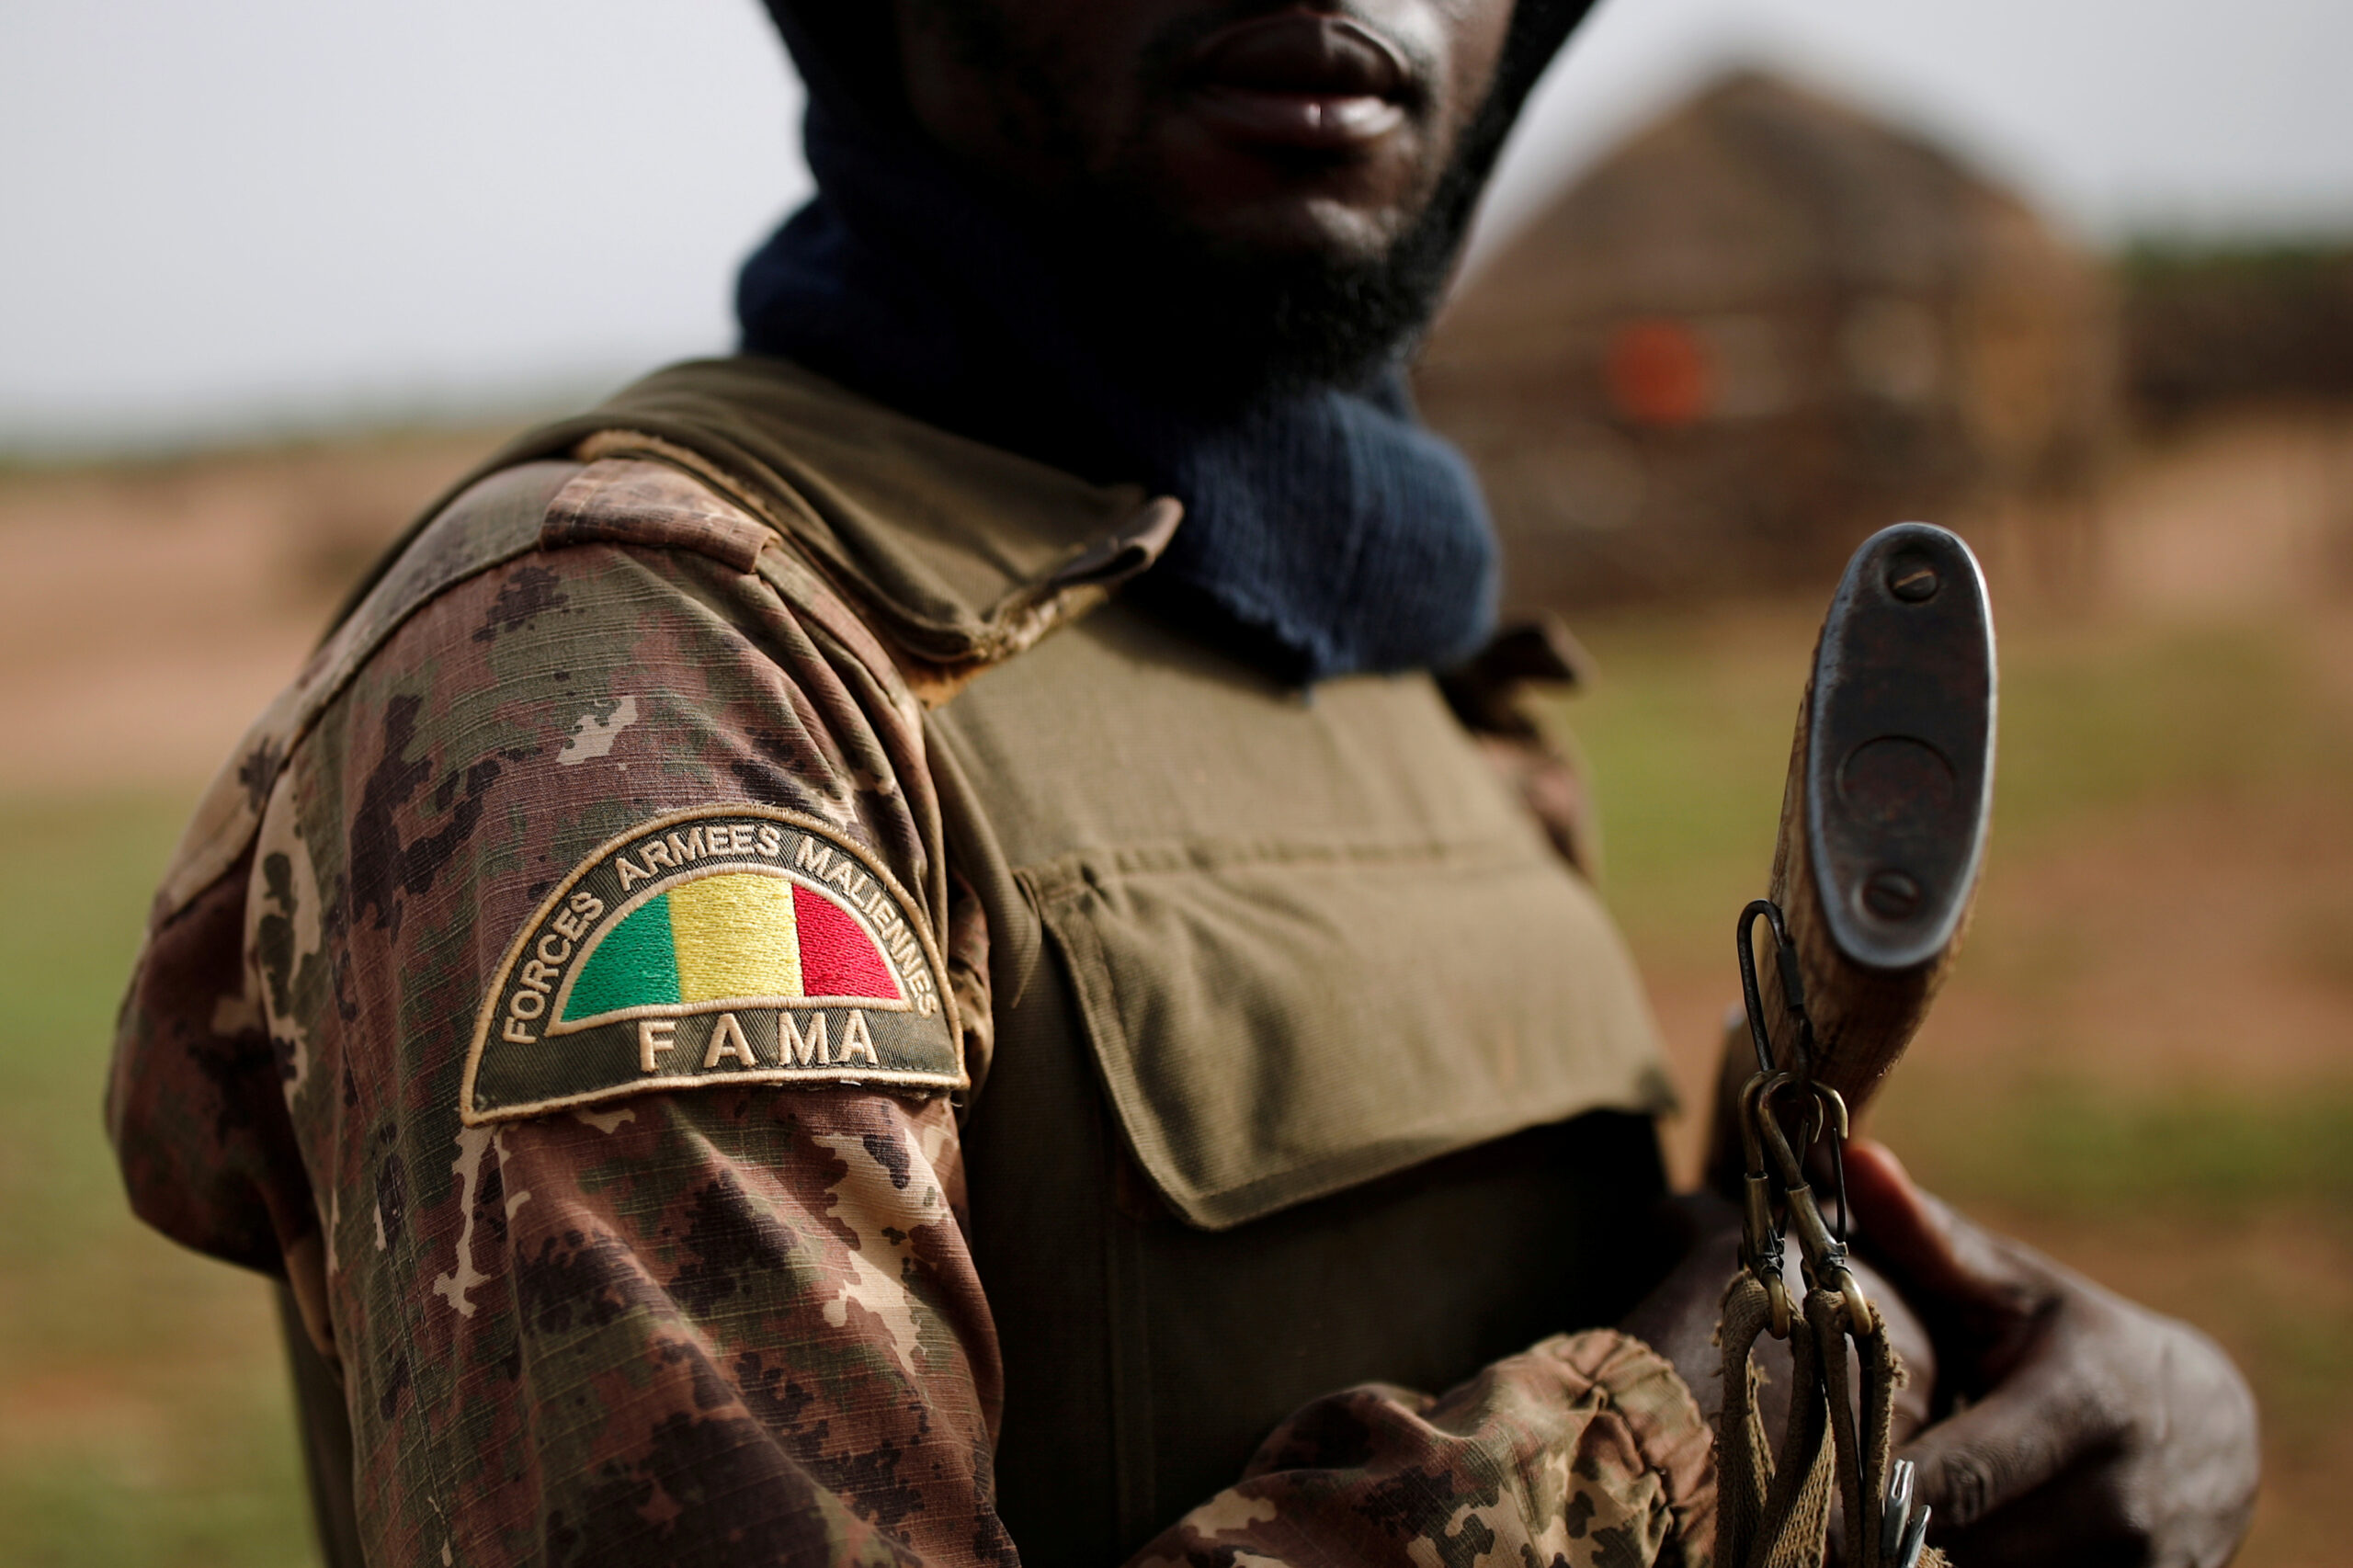 Soldat de l'armée malienne (FAMa) durant l'Operation Barkhane à Ndaki, Mali, le 29 juillet 2019.
© REUTERS/Benoit Tessier